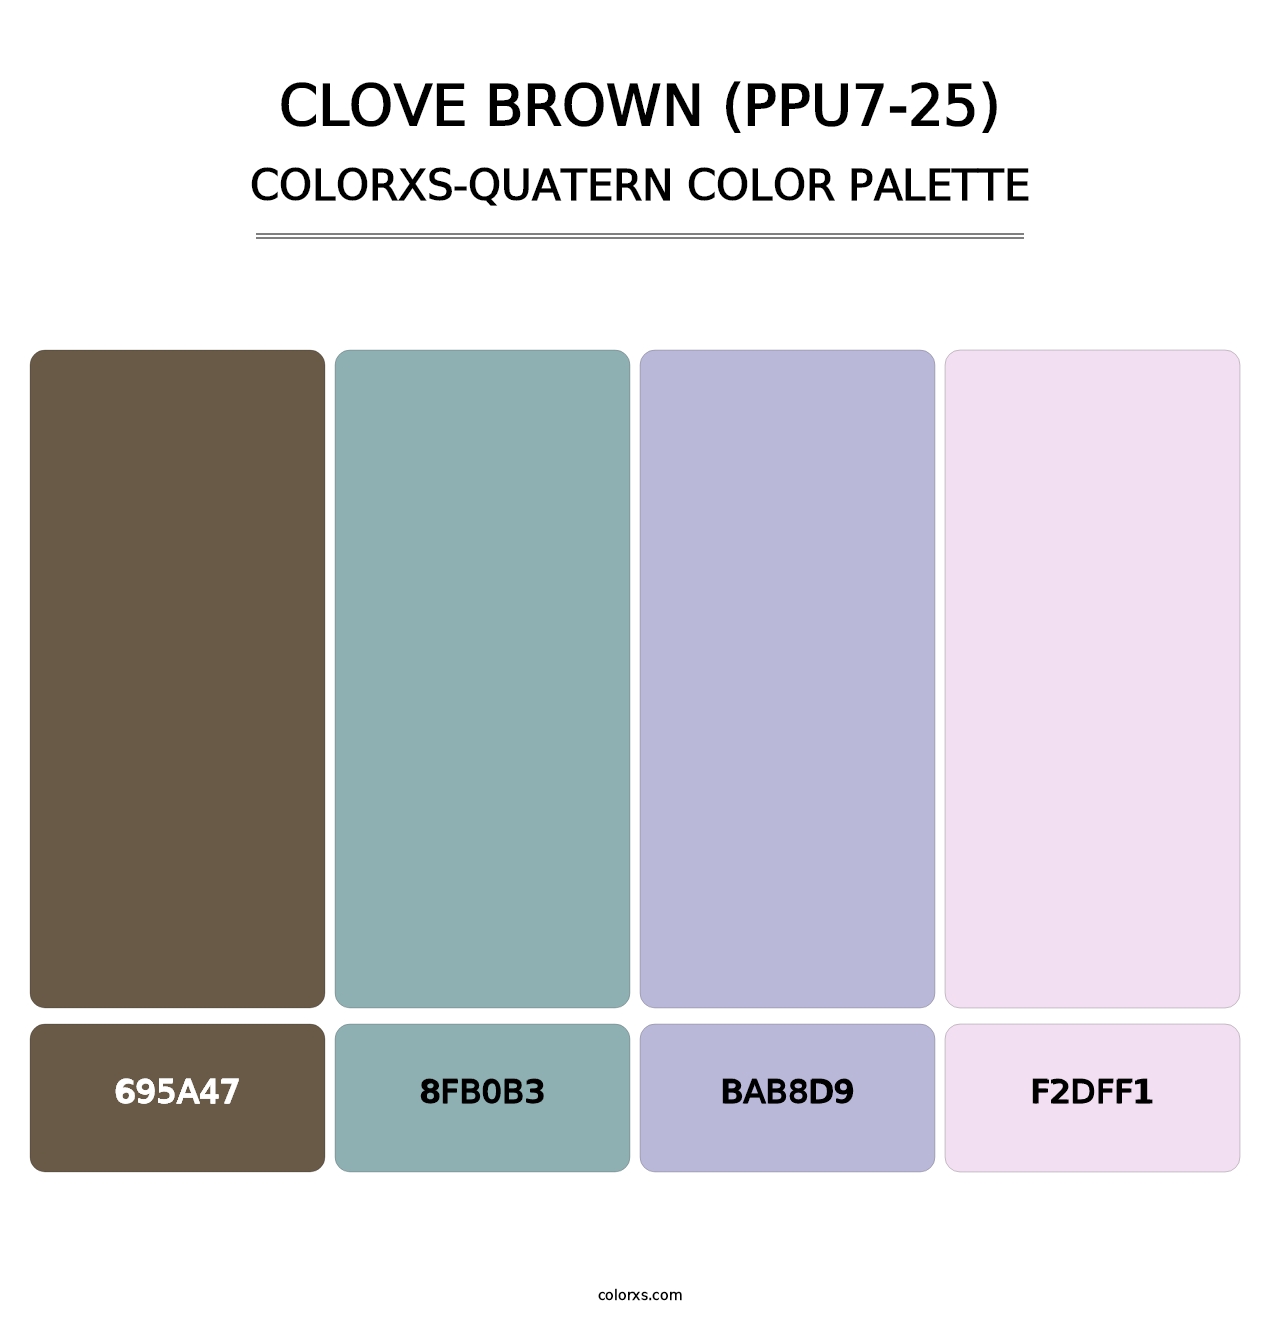 Clove Brown (PPU7-25) - Colorxs Quatern Palette